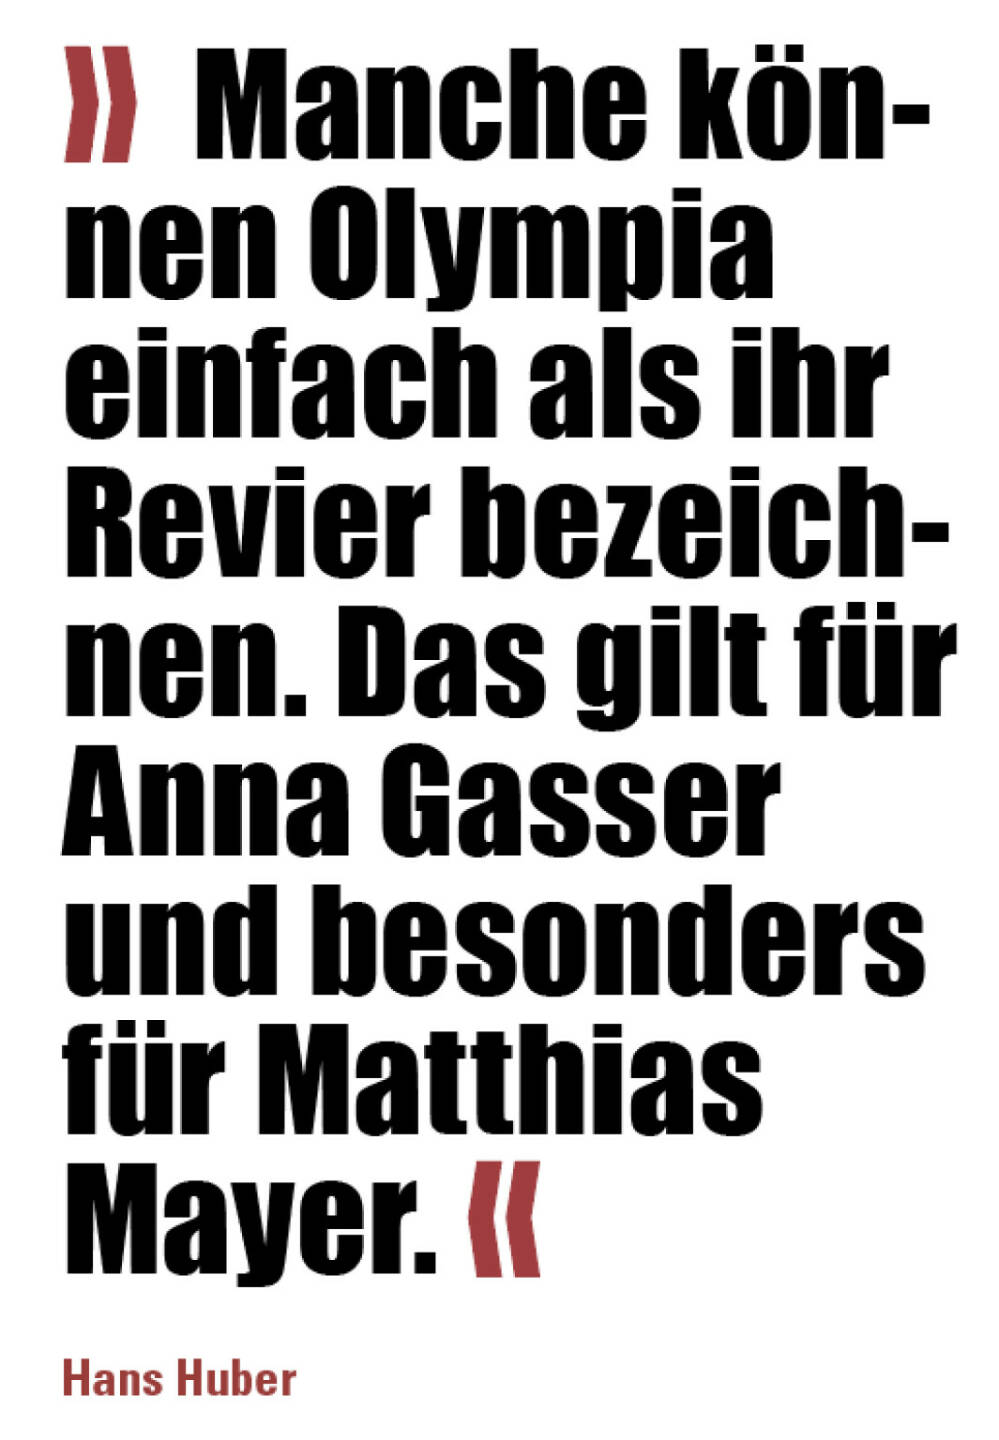 »  Manche können Olympia einfach als ihr Revier bezeichnen. Das gilt für Anna Gasser und besonders für Matthias Mayer. «
Hans Huber